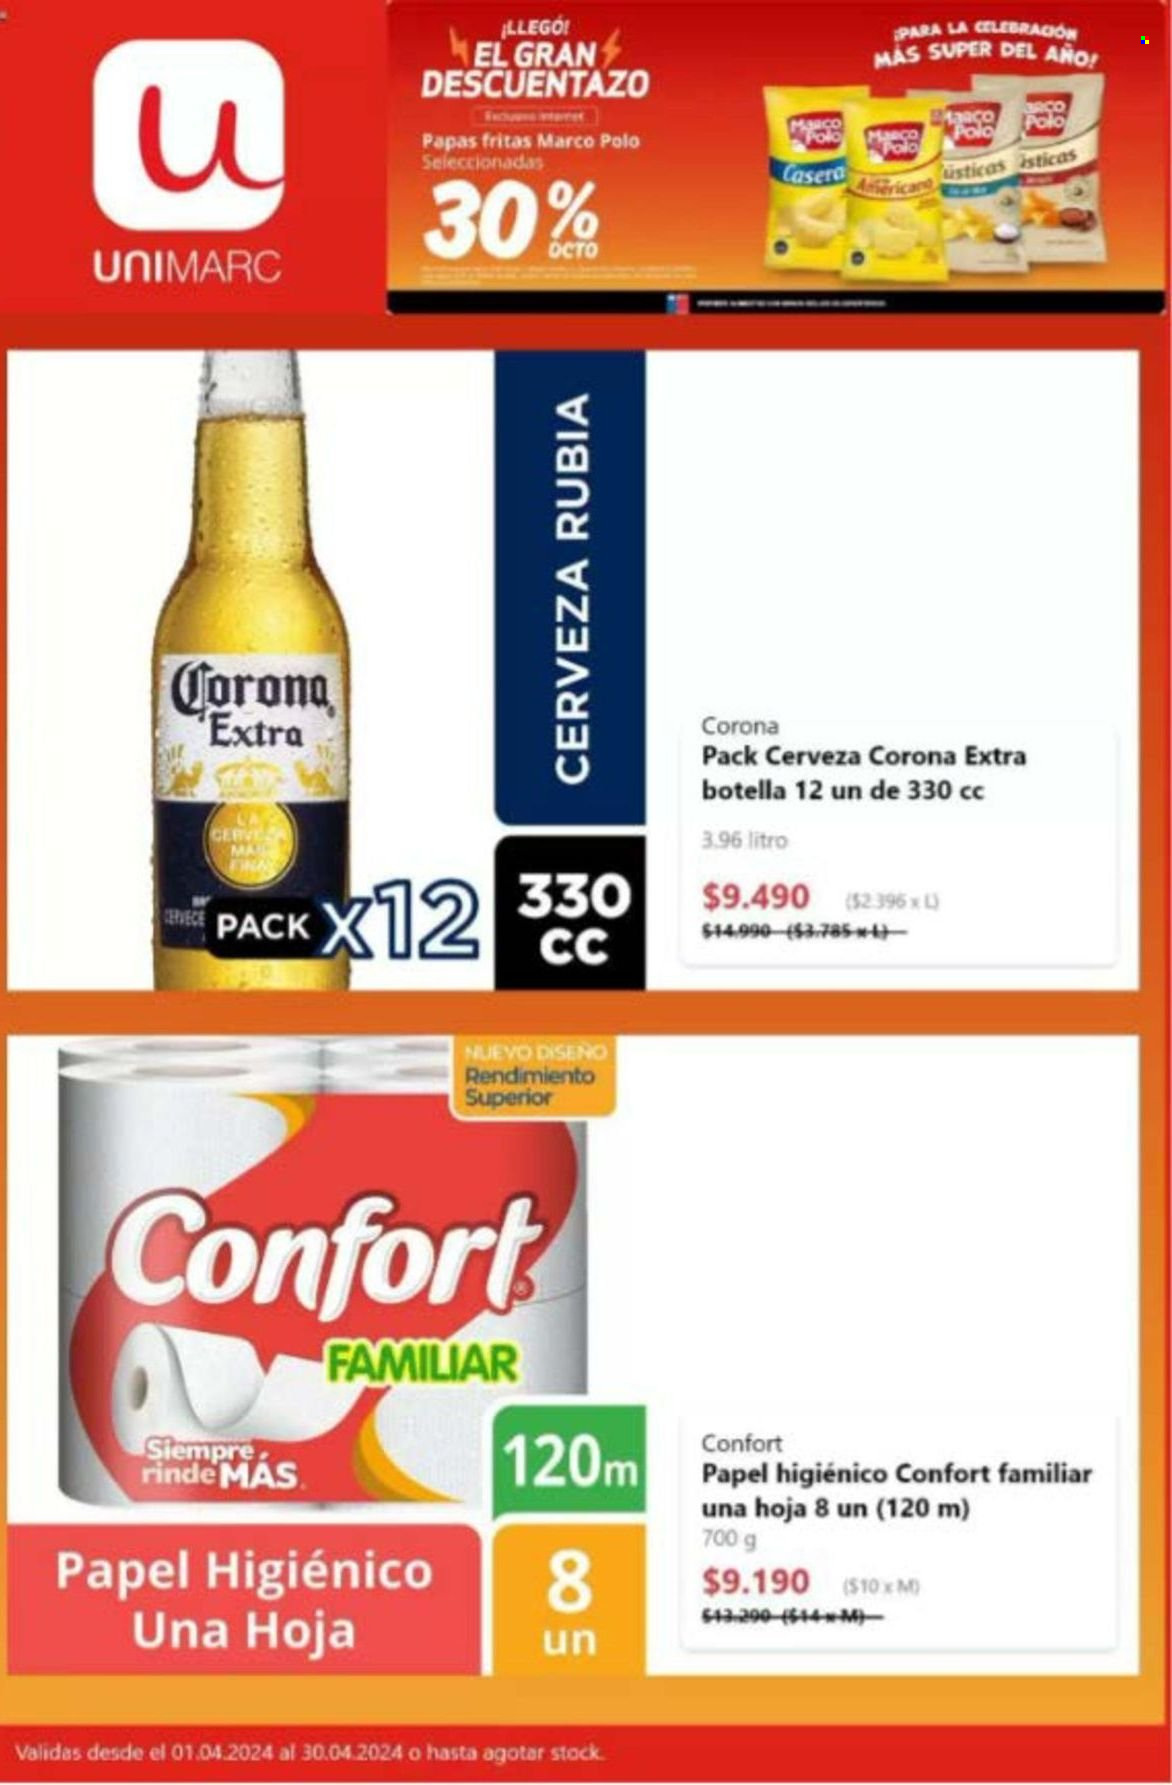 thumbnail - Catálogo Unimarc - 01.04.2024 - 30.04.2024 - Ventas - cerveza rubia, Corona, bebida alcohólica, cerveza, papas fritas, Rinde Más, chips, papel higienico. Página 5.